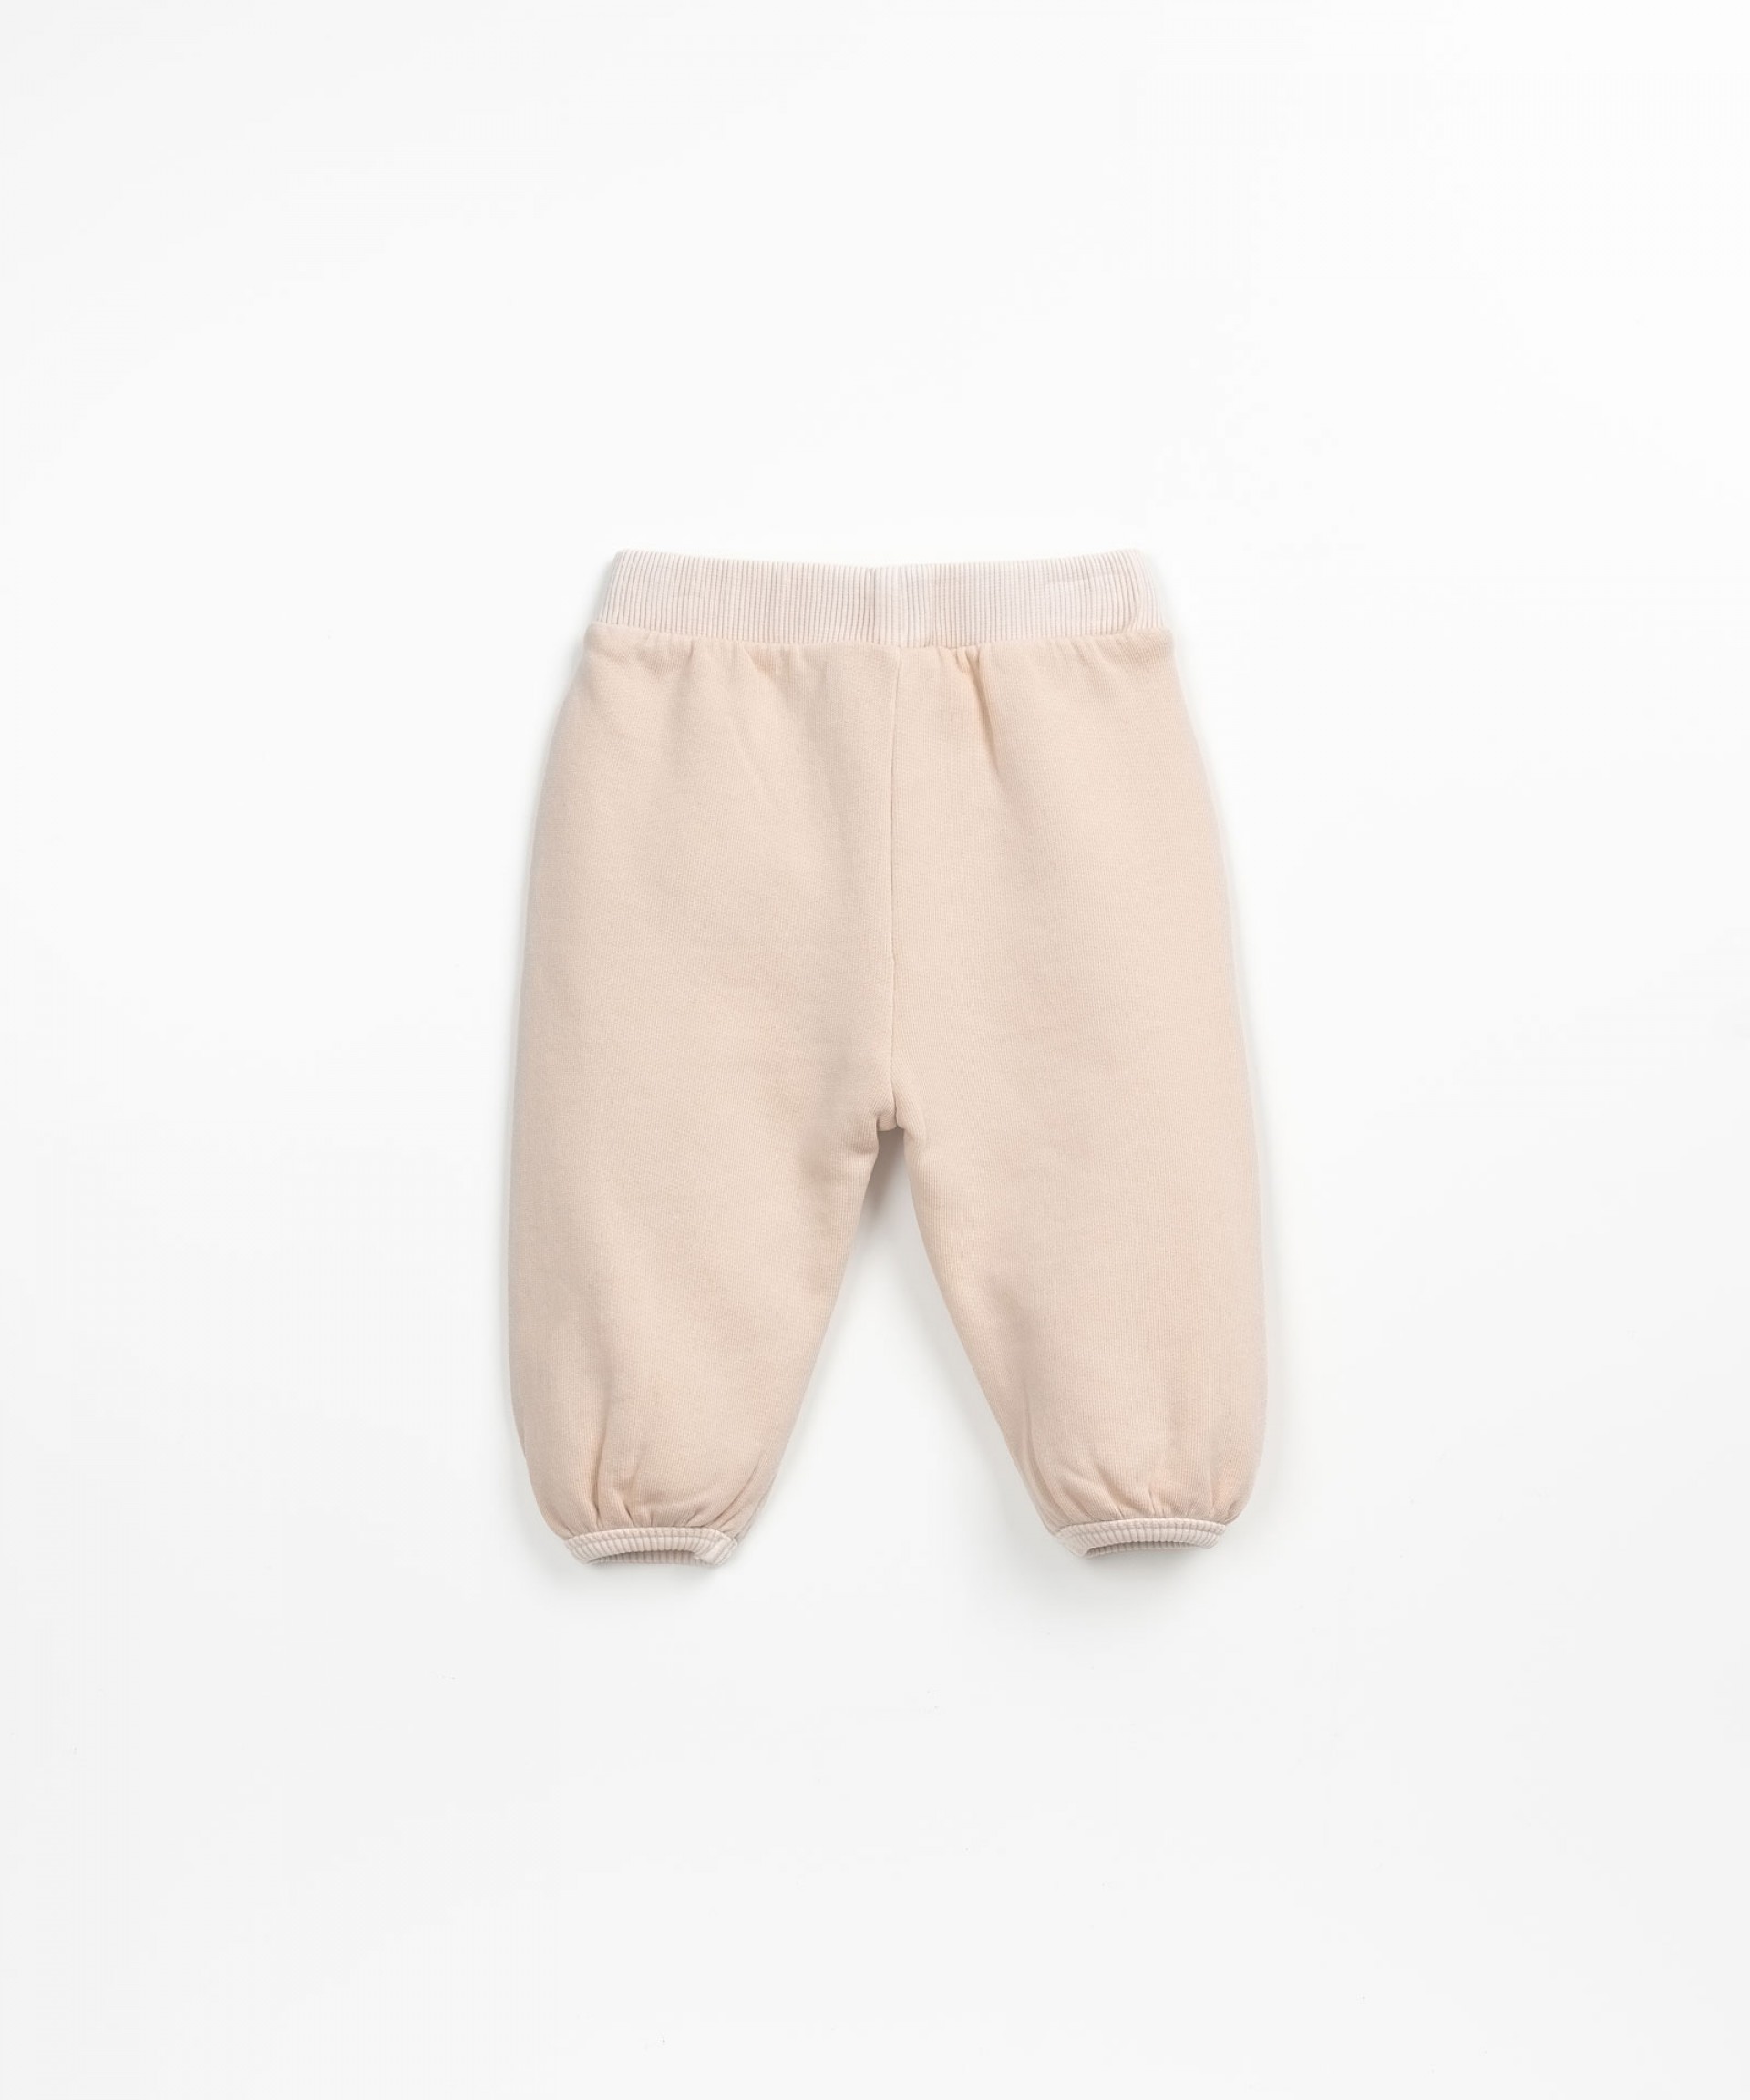 Pantaloni con laccio decorativo | Textile Art